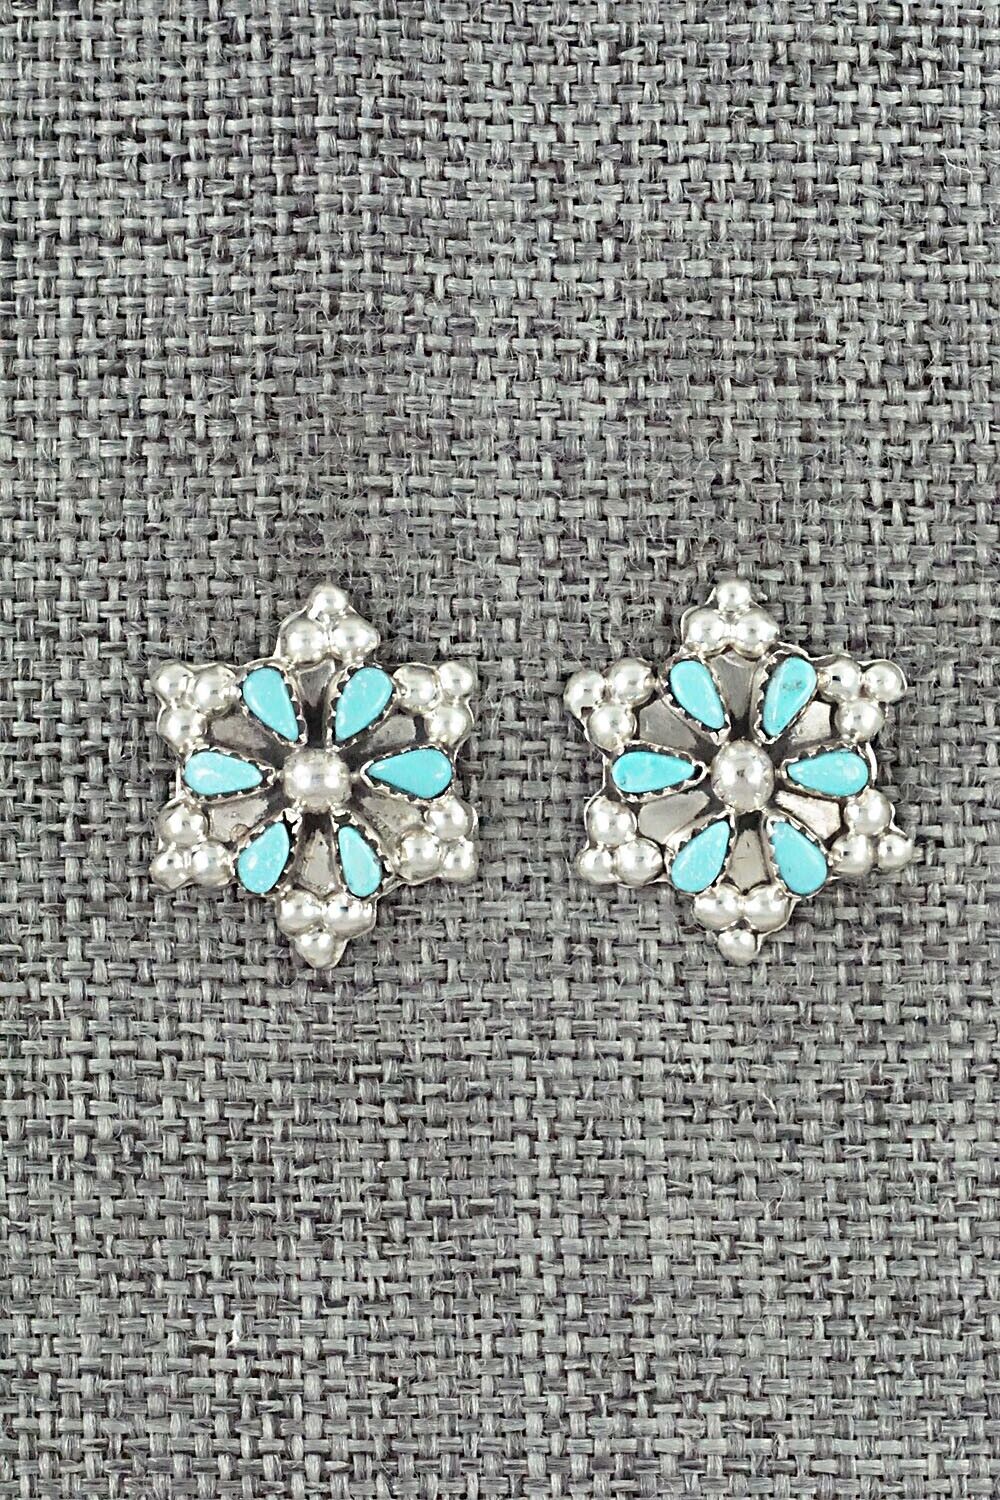 Turquoise & Sterling Silver Earrings - Alice Mutte